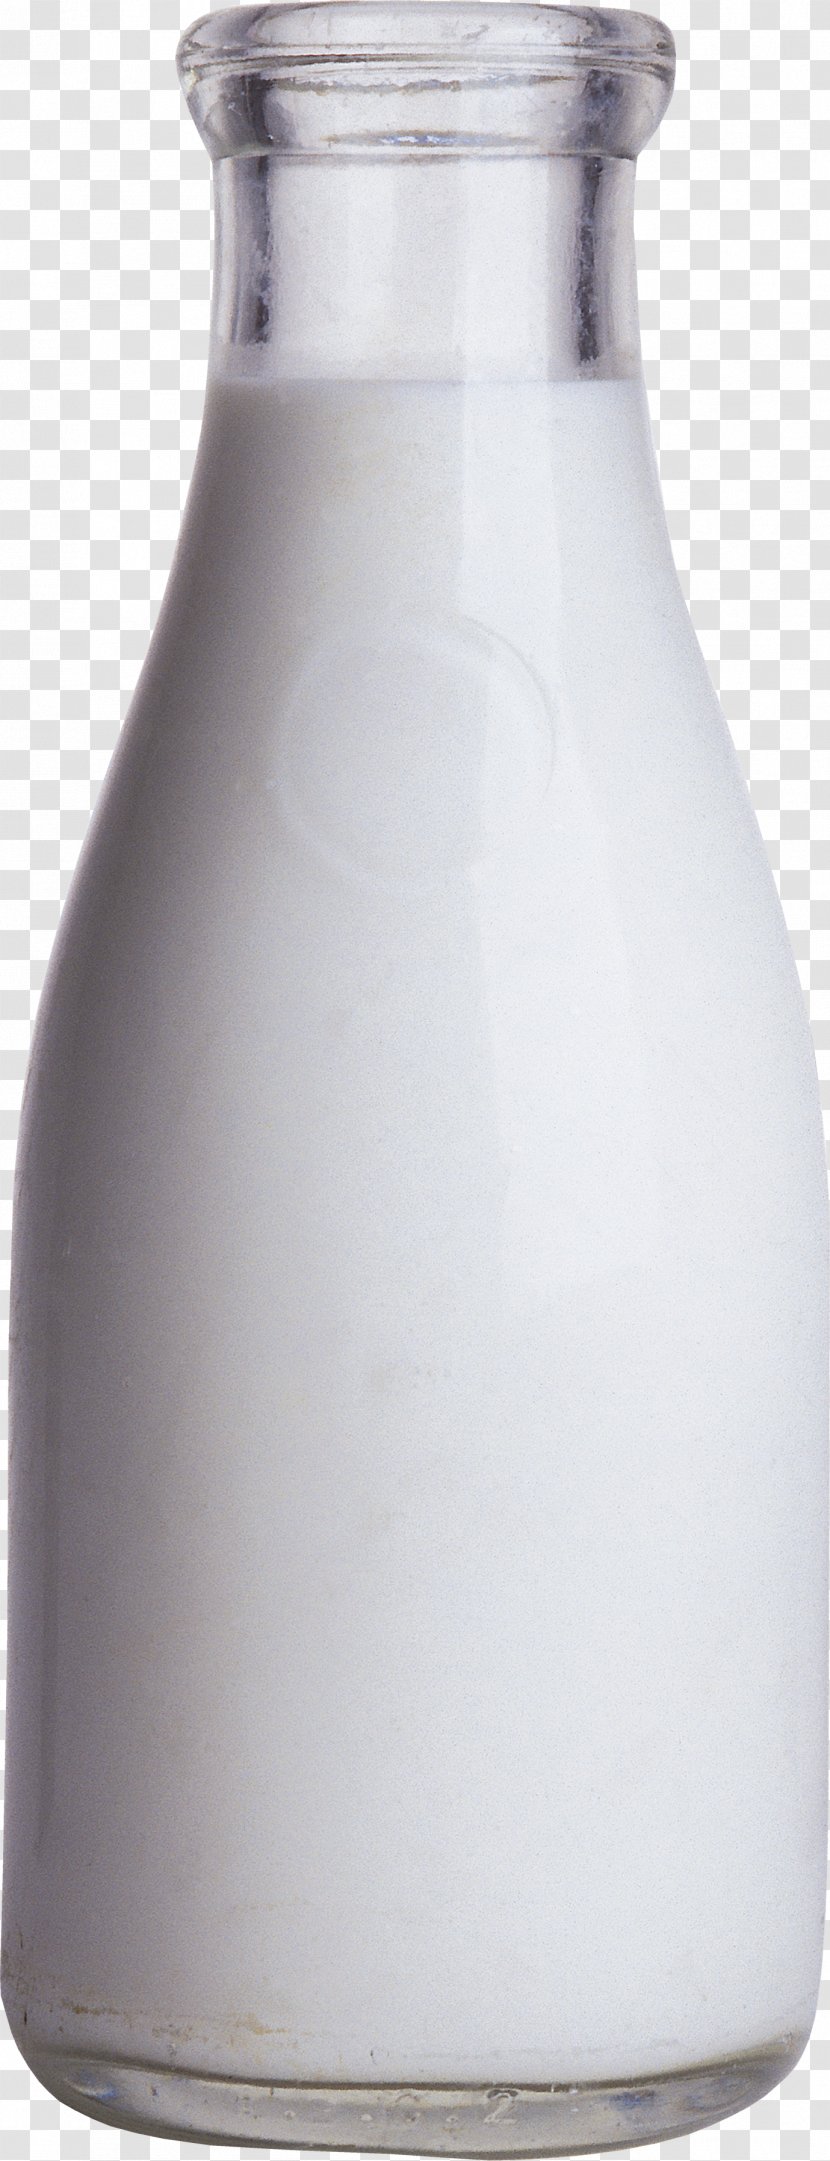 Milk Bottle Square Jug - Glass Transparent PNG